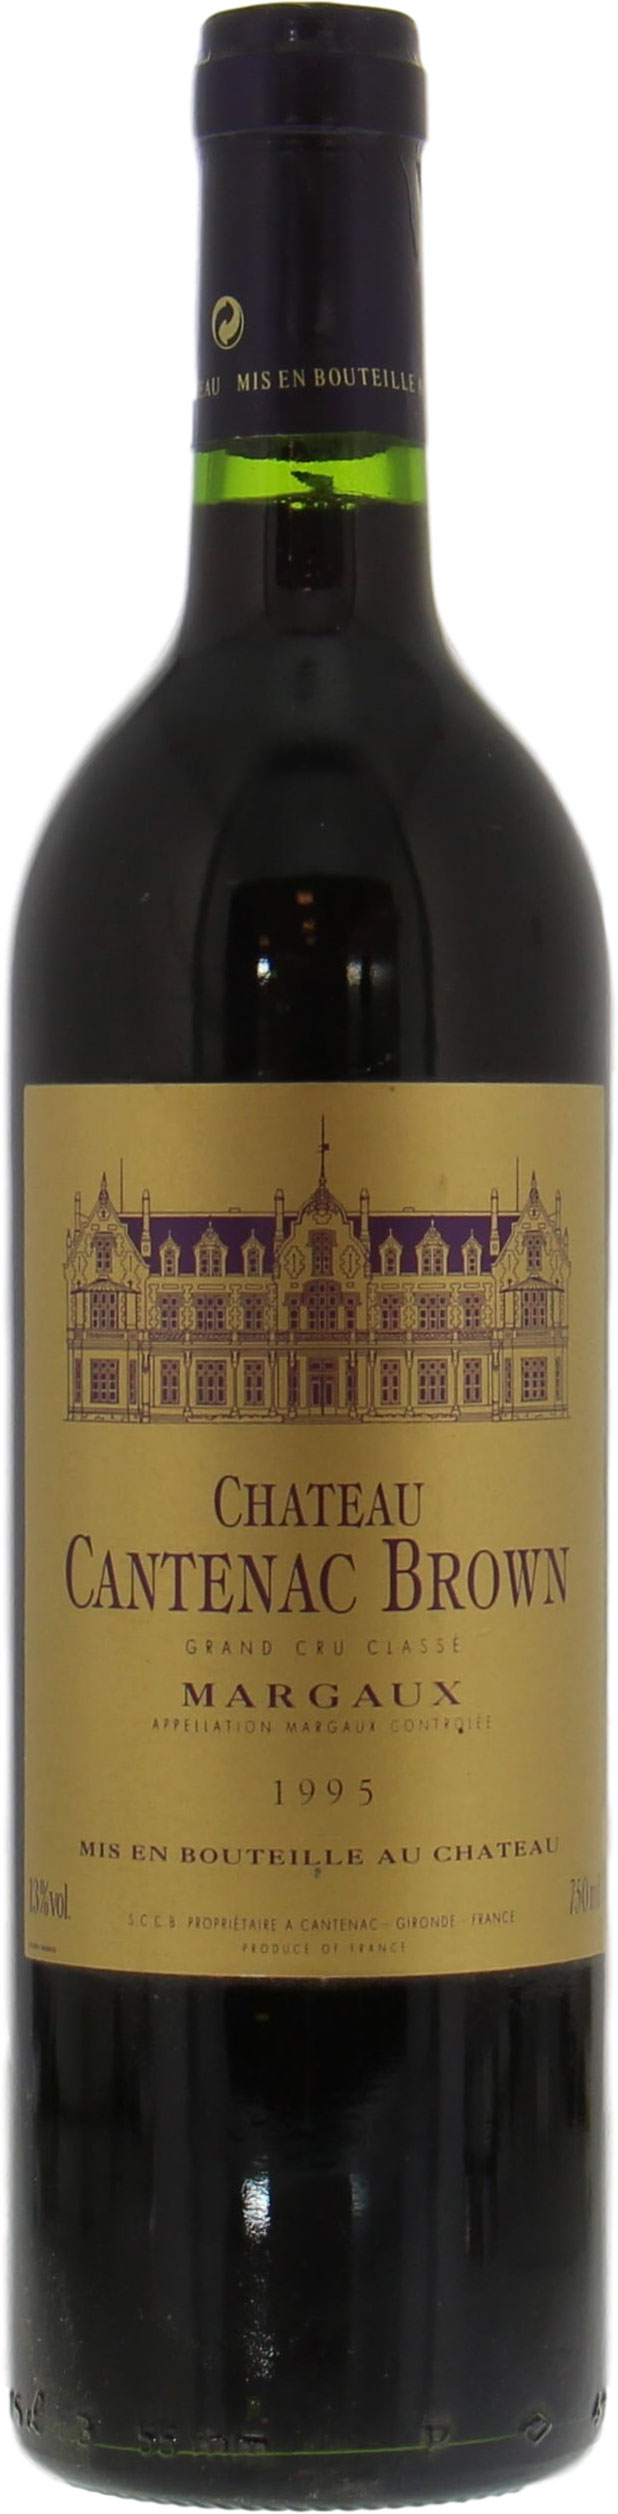 Chateau Cantenac Brown - Chateau Cantenac Brown 1995